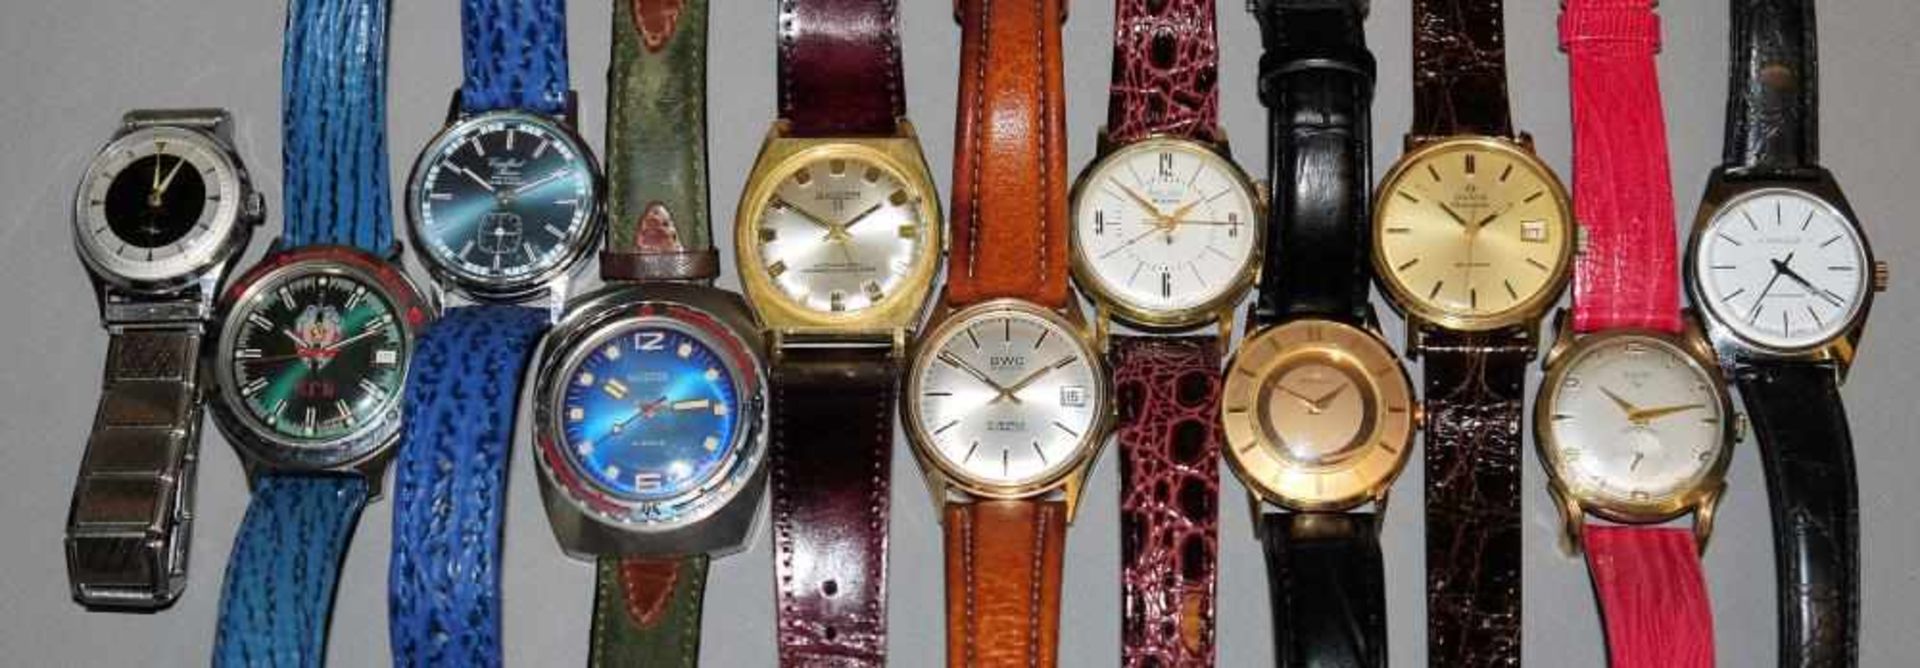 Elf sammelwürdige Armbanduhren mit mechanischen Werken ab 1950er Jahre Olma Automatic; Elgin; Bifora